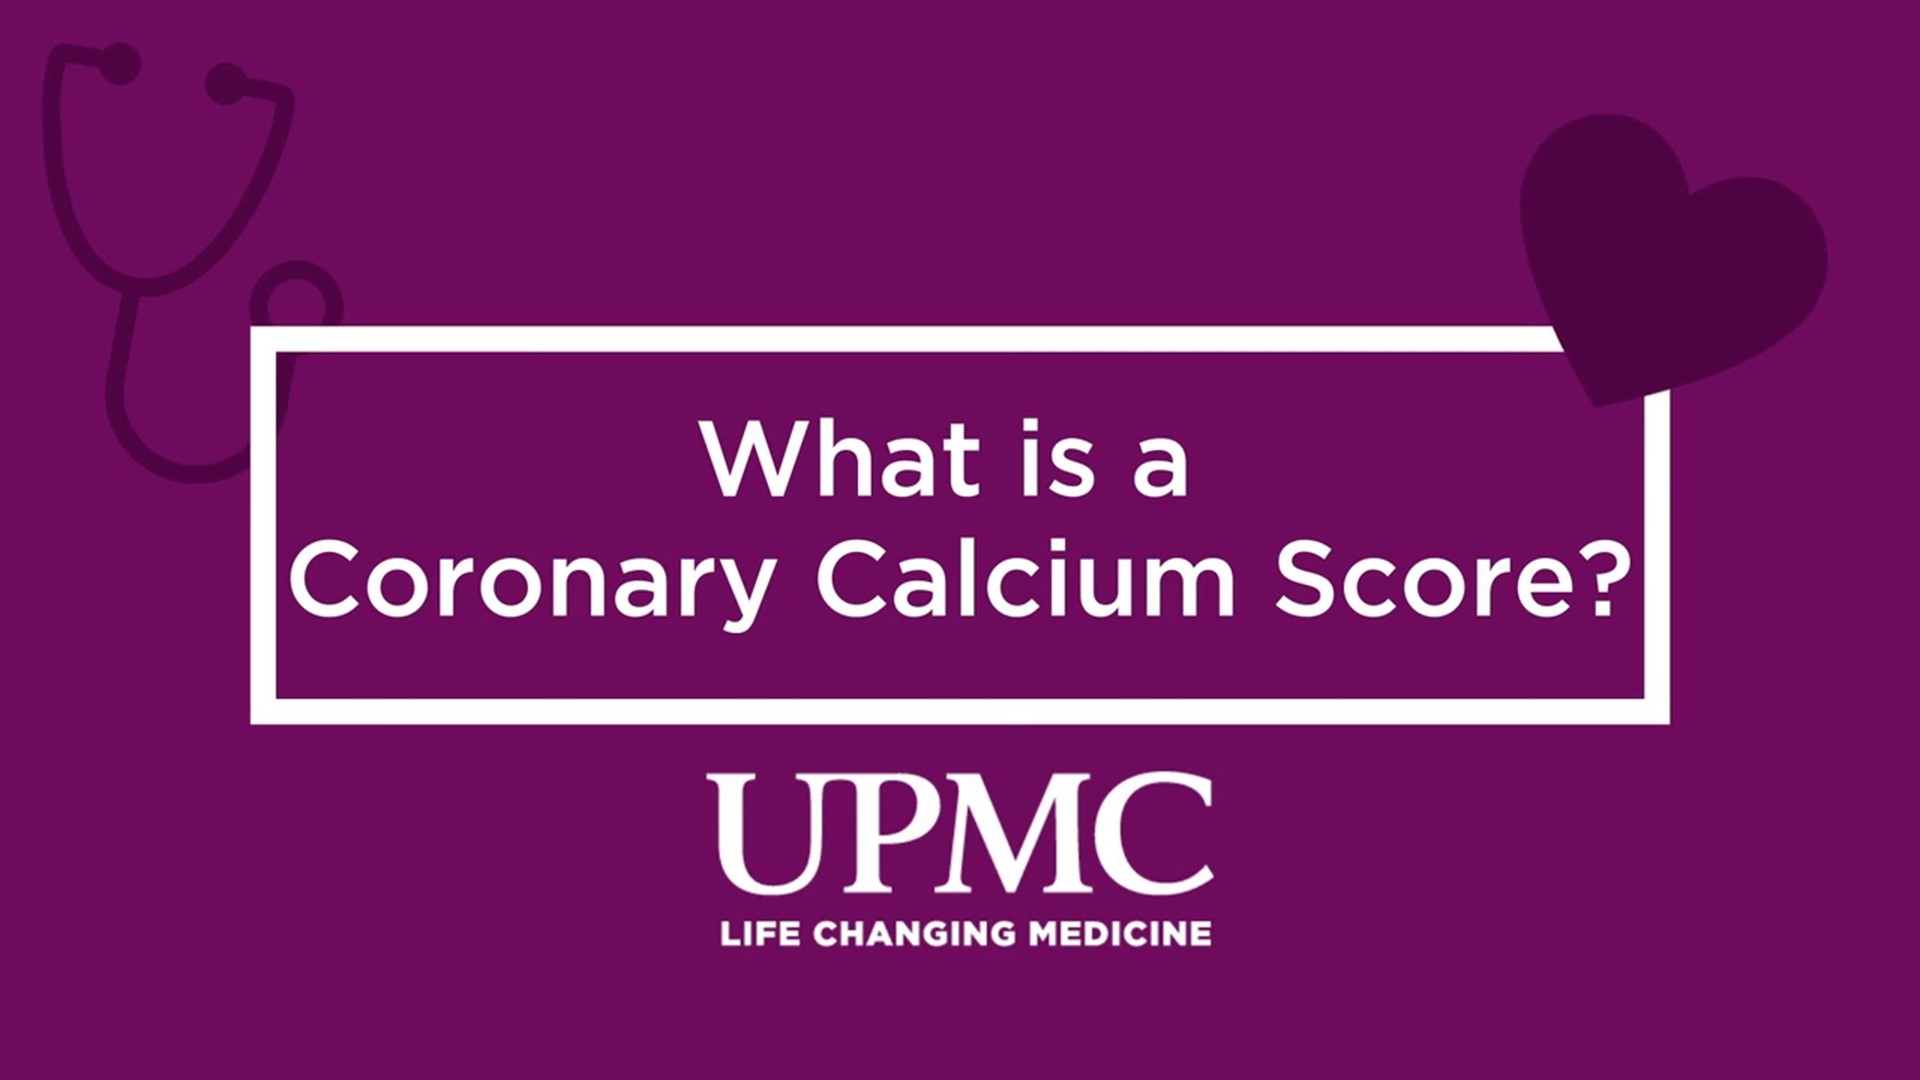 UPMC’s Dr. Michael Desiderio explains the Coronary Calcium Score.